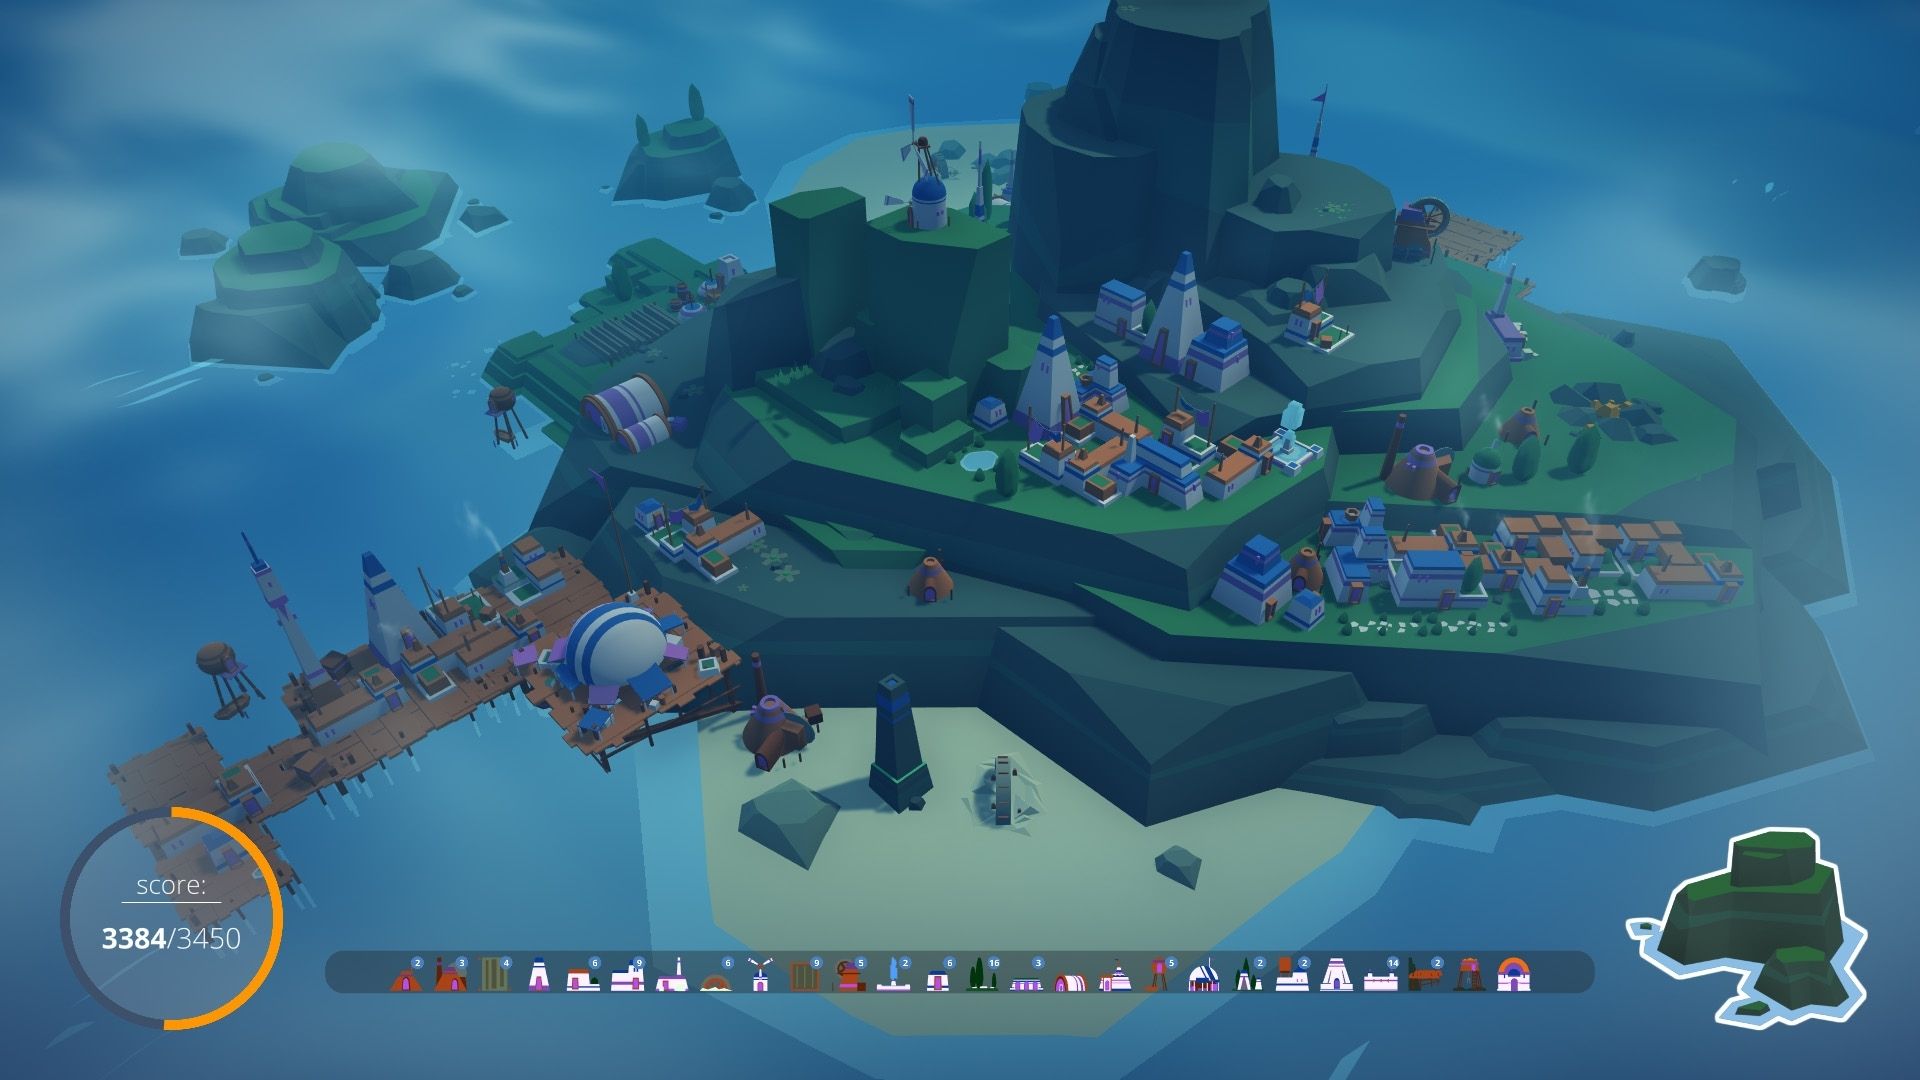 لقطة شاشة من سكان الجزر ، تظهر جزيرة كبيرة مع بعض المنازل والميناء